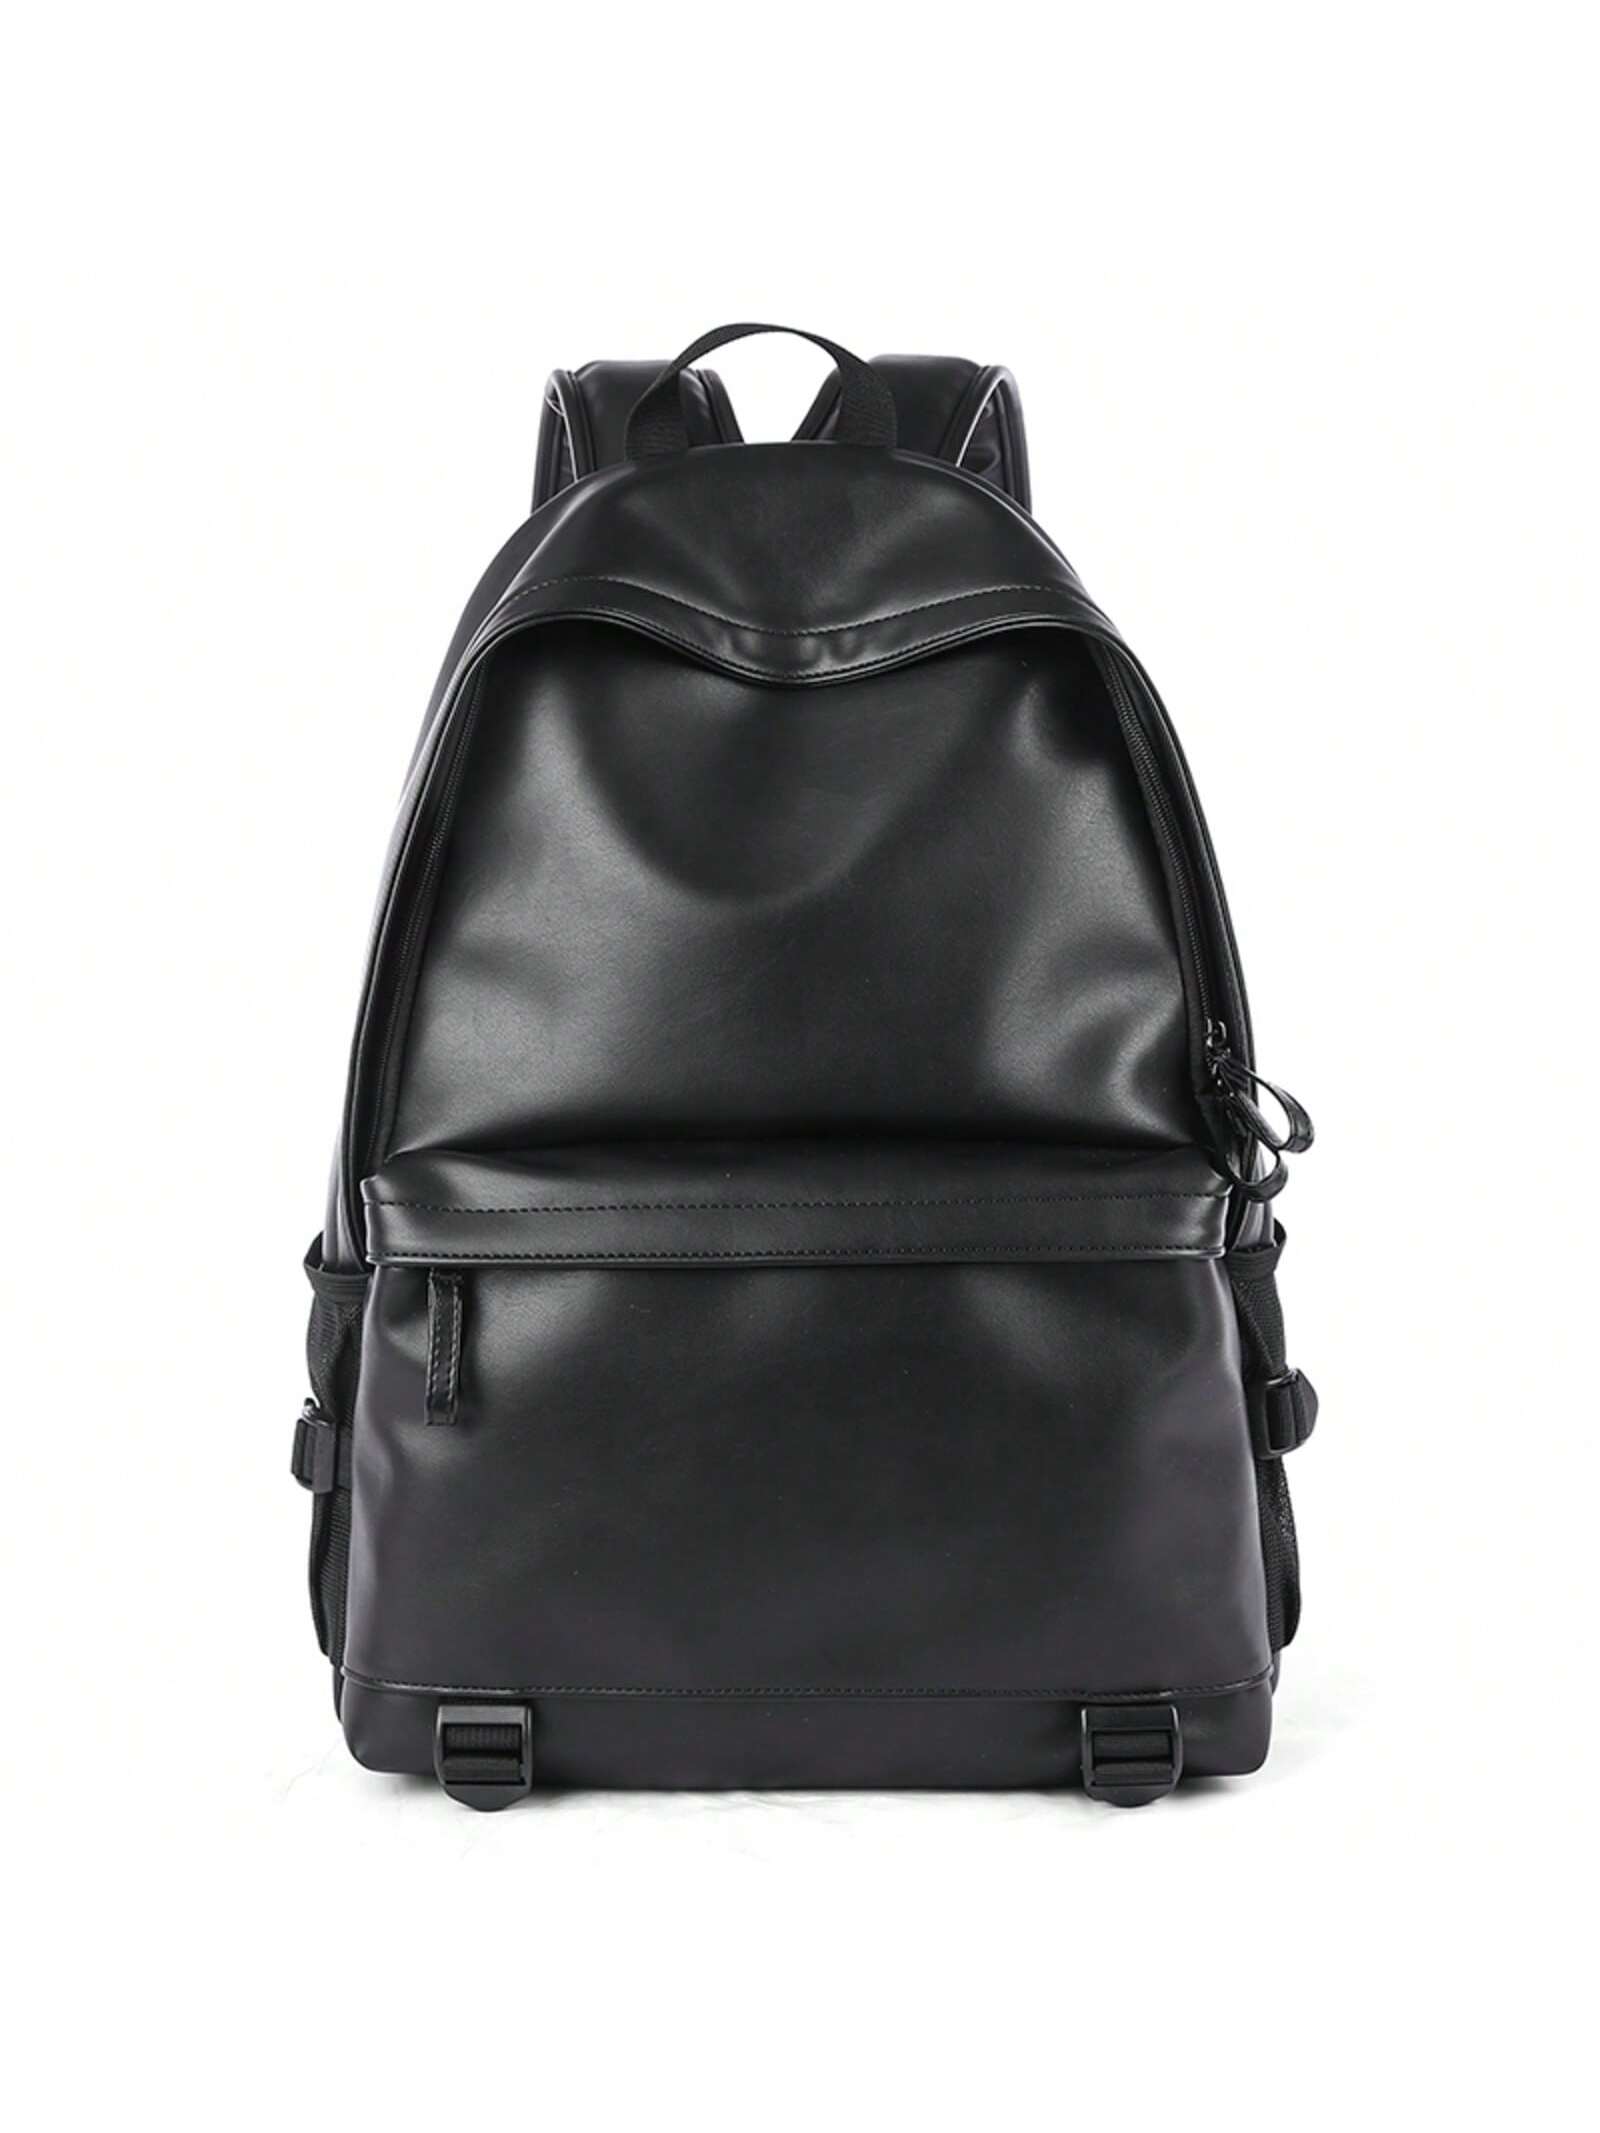 Большой вместительный кожаный рюкзак из ПВХ, черный многофункциональная водонепроницаемая дорожная сумка для подгузников и хранения